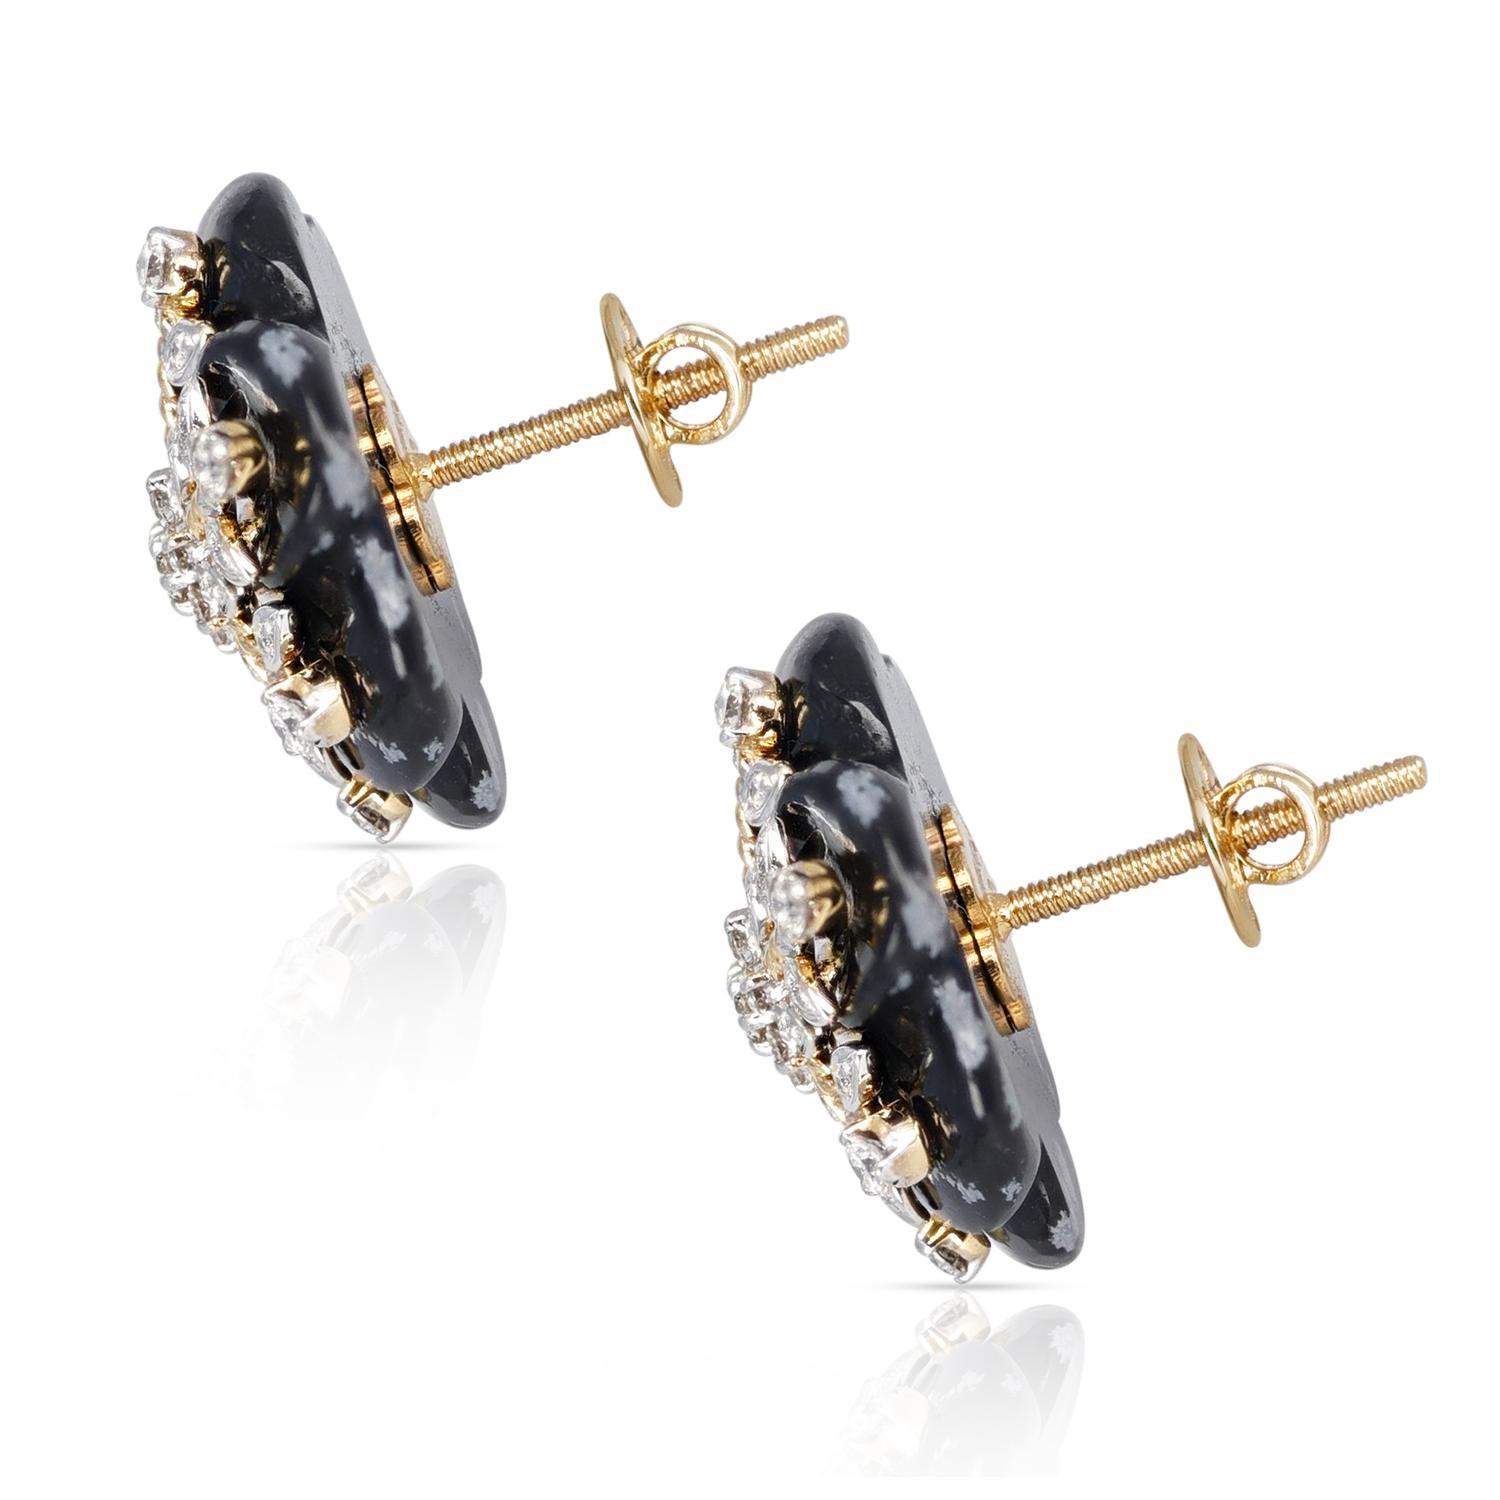 Ein Paar Schneeflocken-Obsidian-Ohrringe mit 17,20 ct. Obsidian und 0,64 ct. Diamanten aus 14 Karat Gelbgold. Das Gesamtgewicht der Ohrringe beträgt 6,60 Gramm. Die Länge der Ohrringe beträgt 0,65